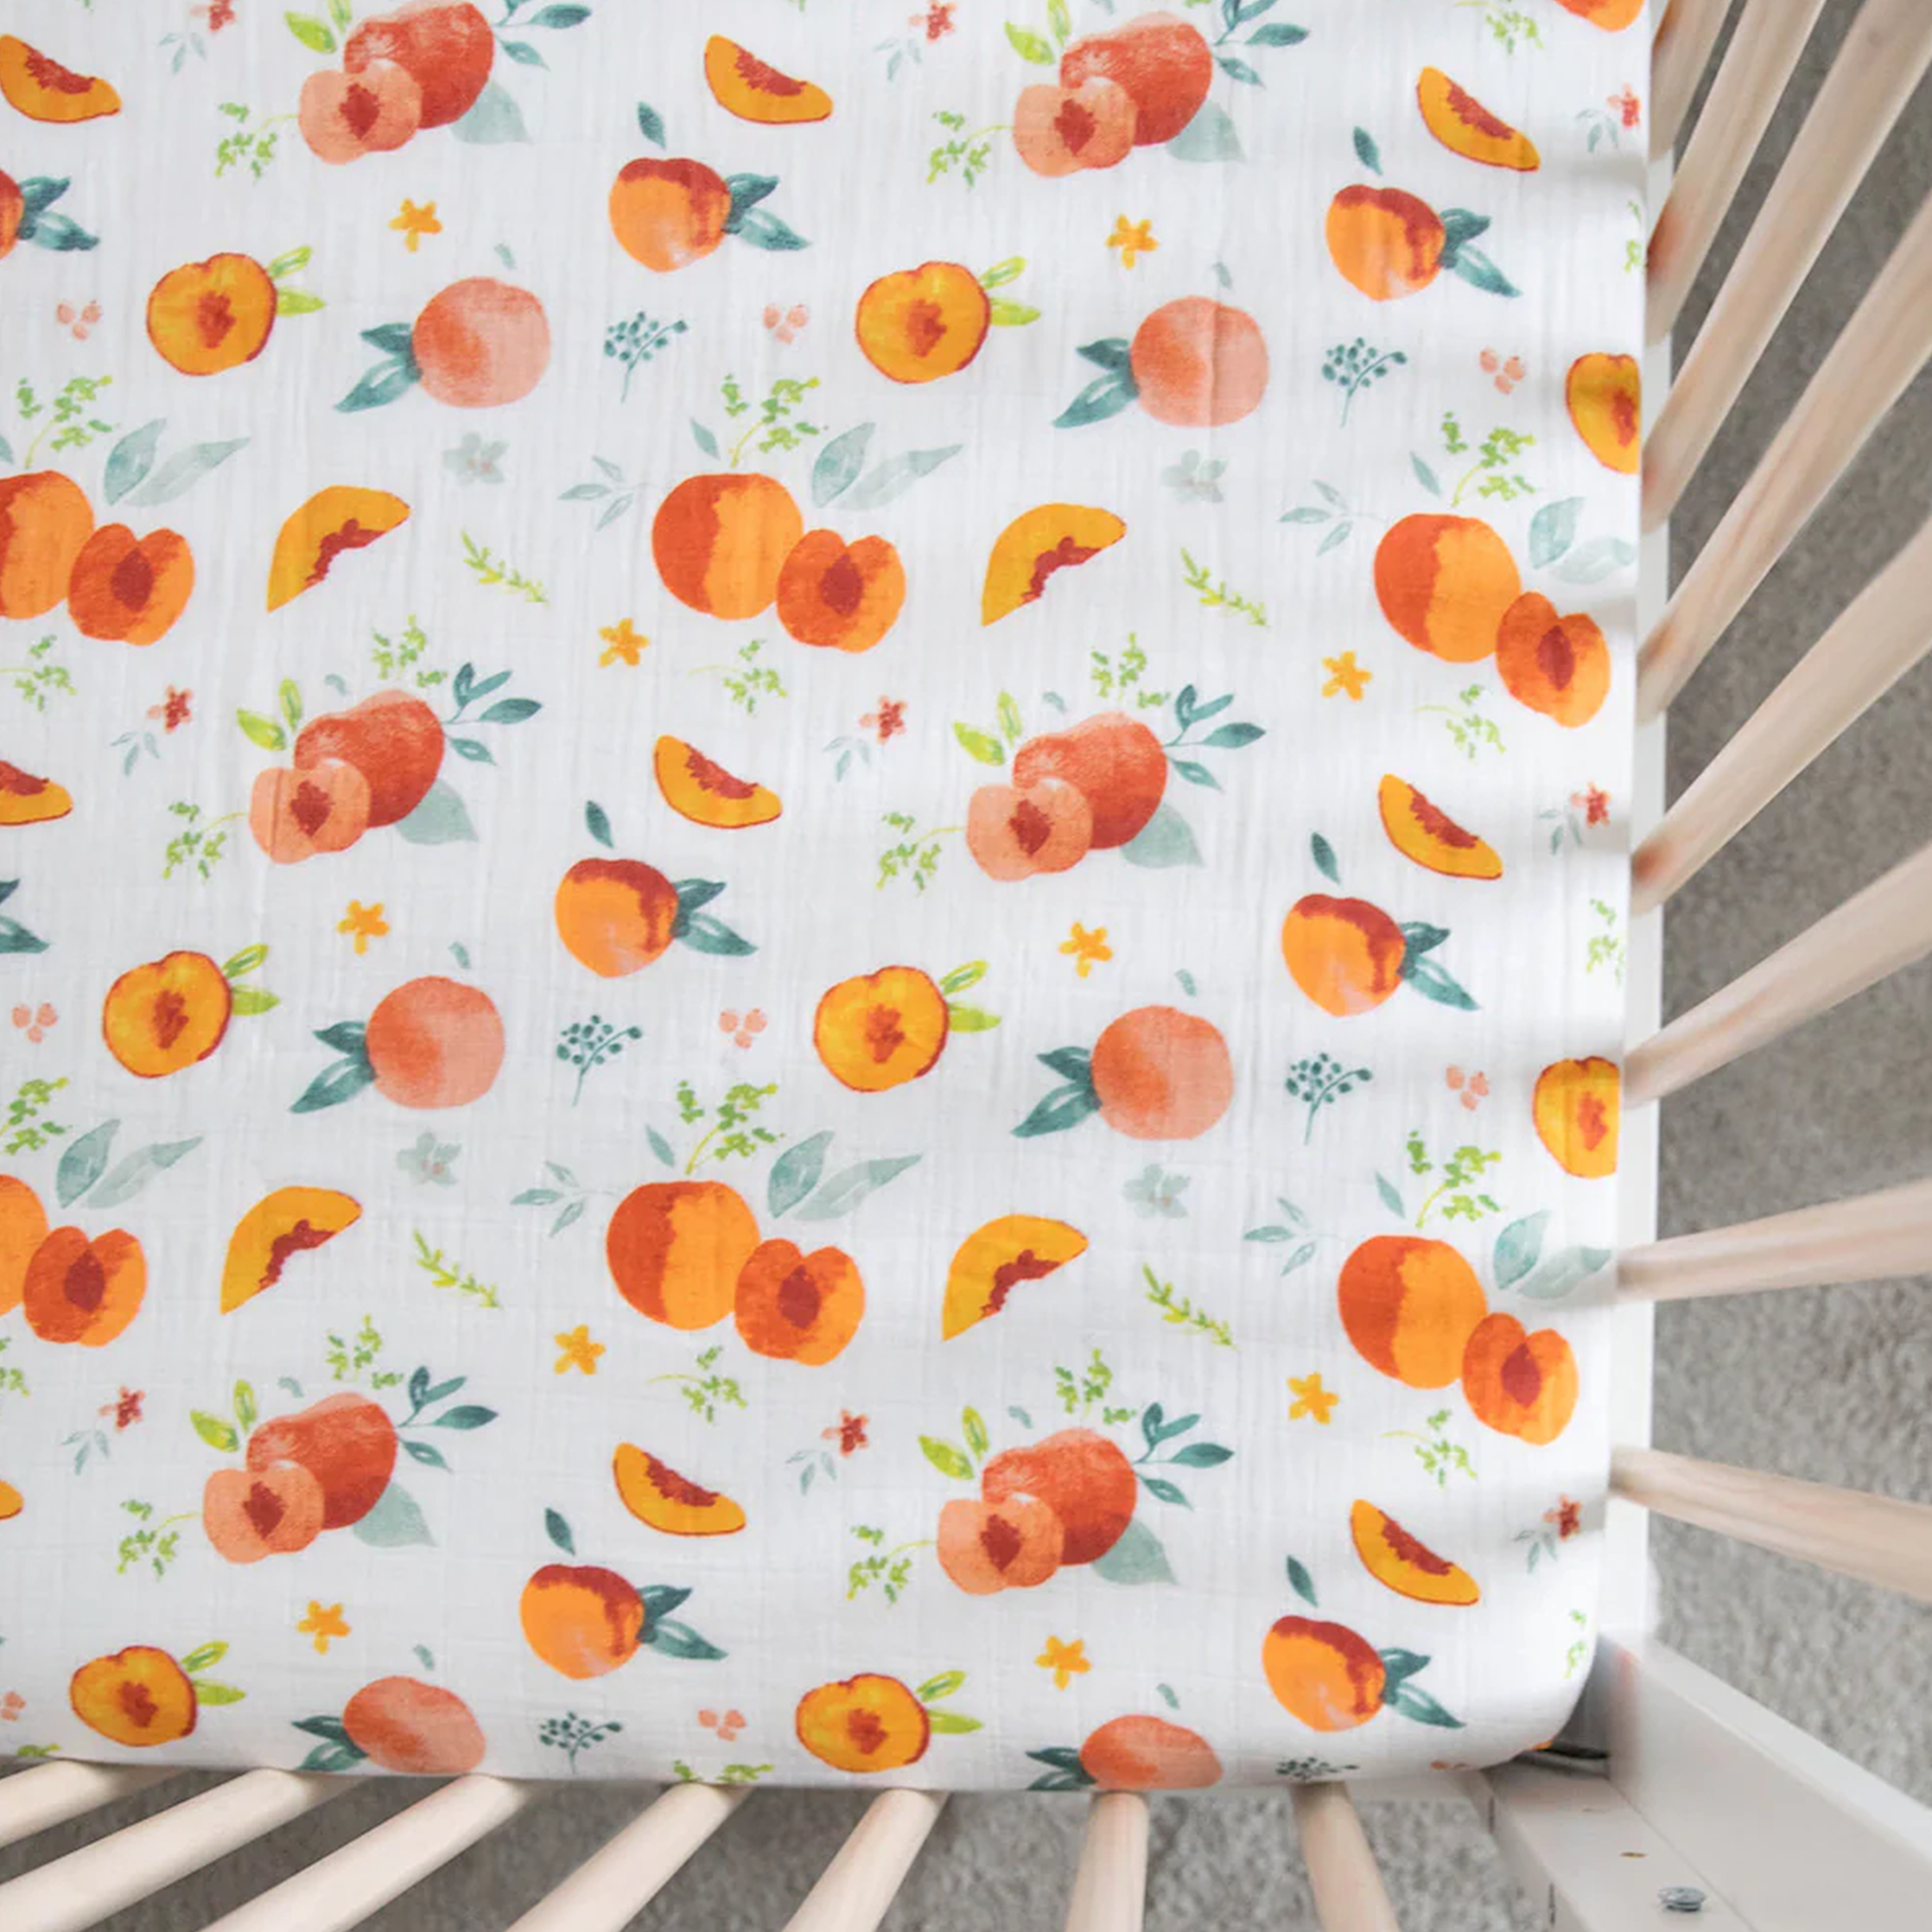 Cotton Muslin Crib Sheet - Georgia Peach